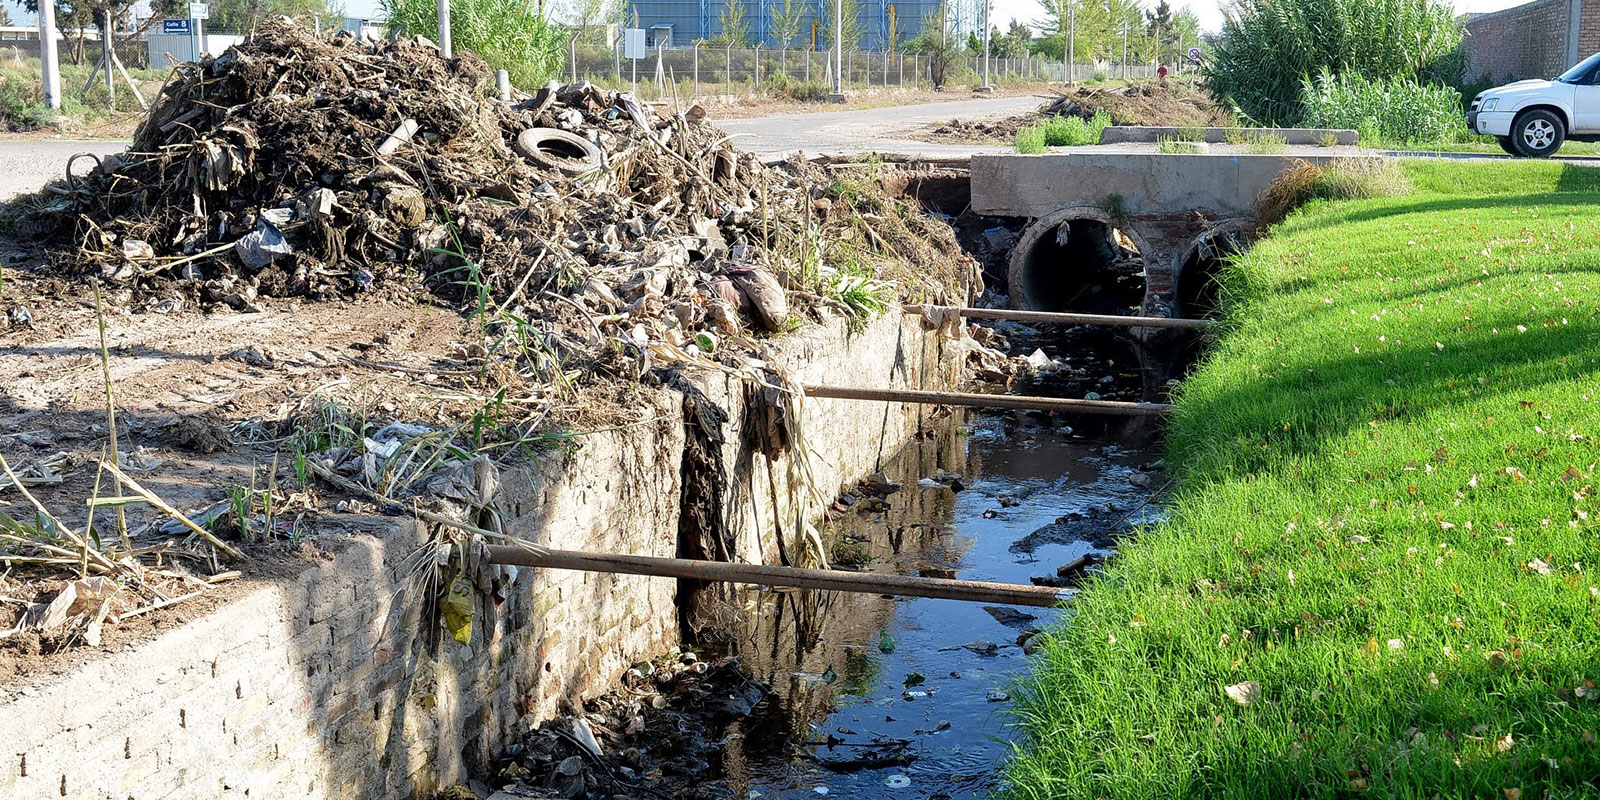 Contaminación con residuos sólidos urbanos en canal